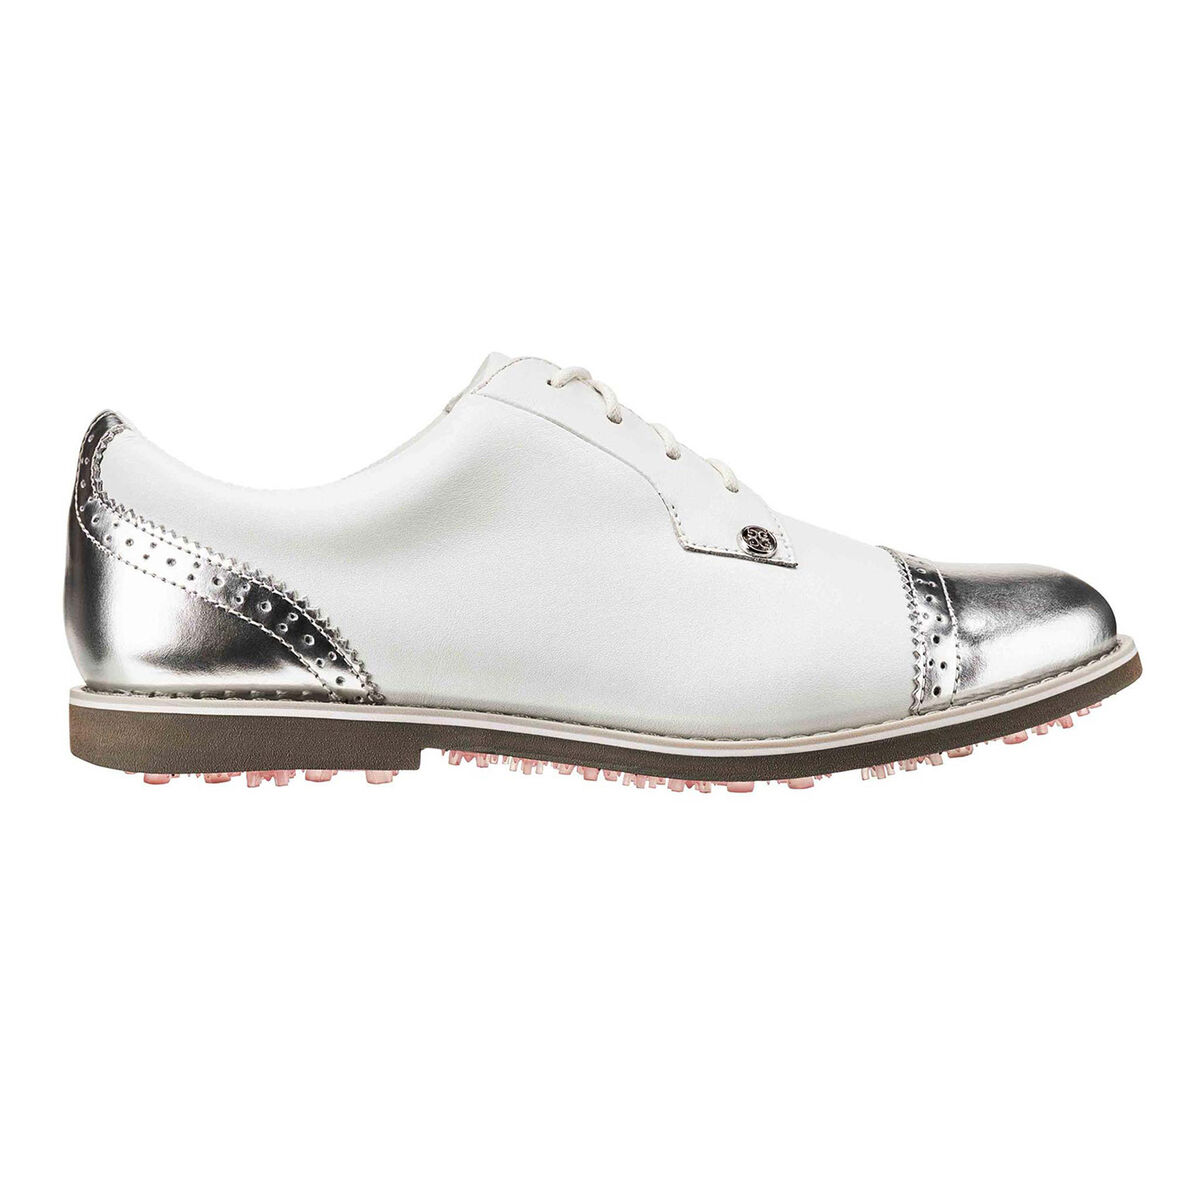 지포어 우먼 골프화 G/FORE Cap Toe Gallivanter Womens Golf Shoe - White/Silver